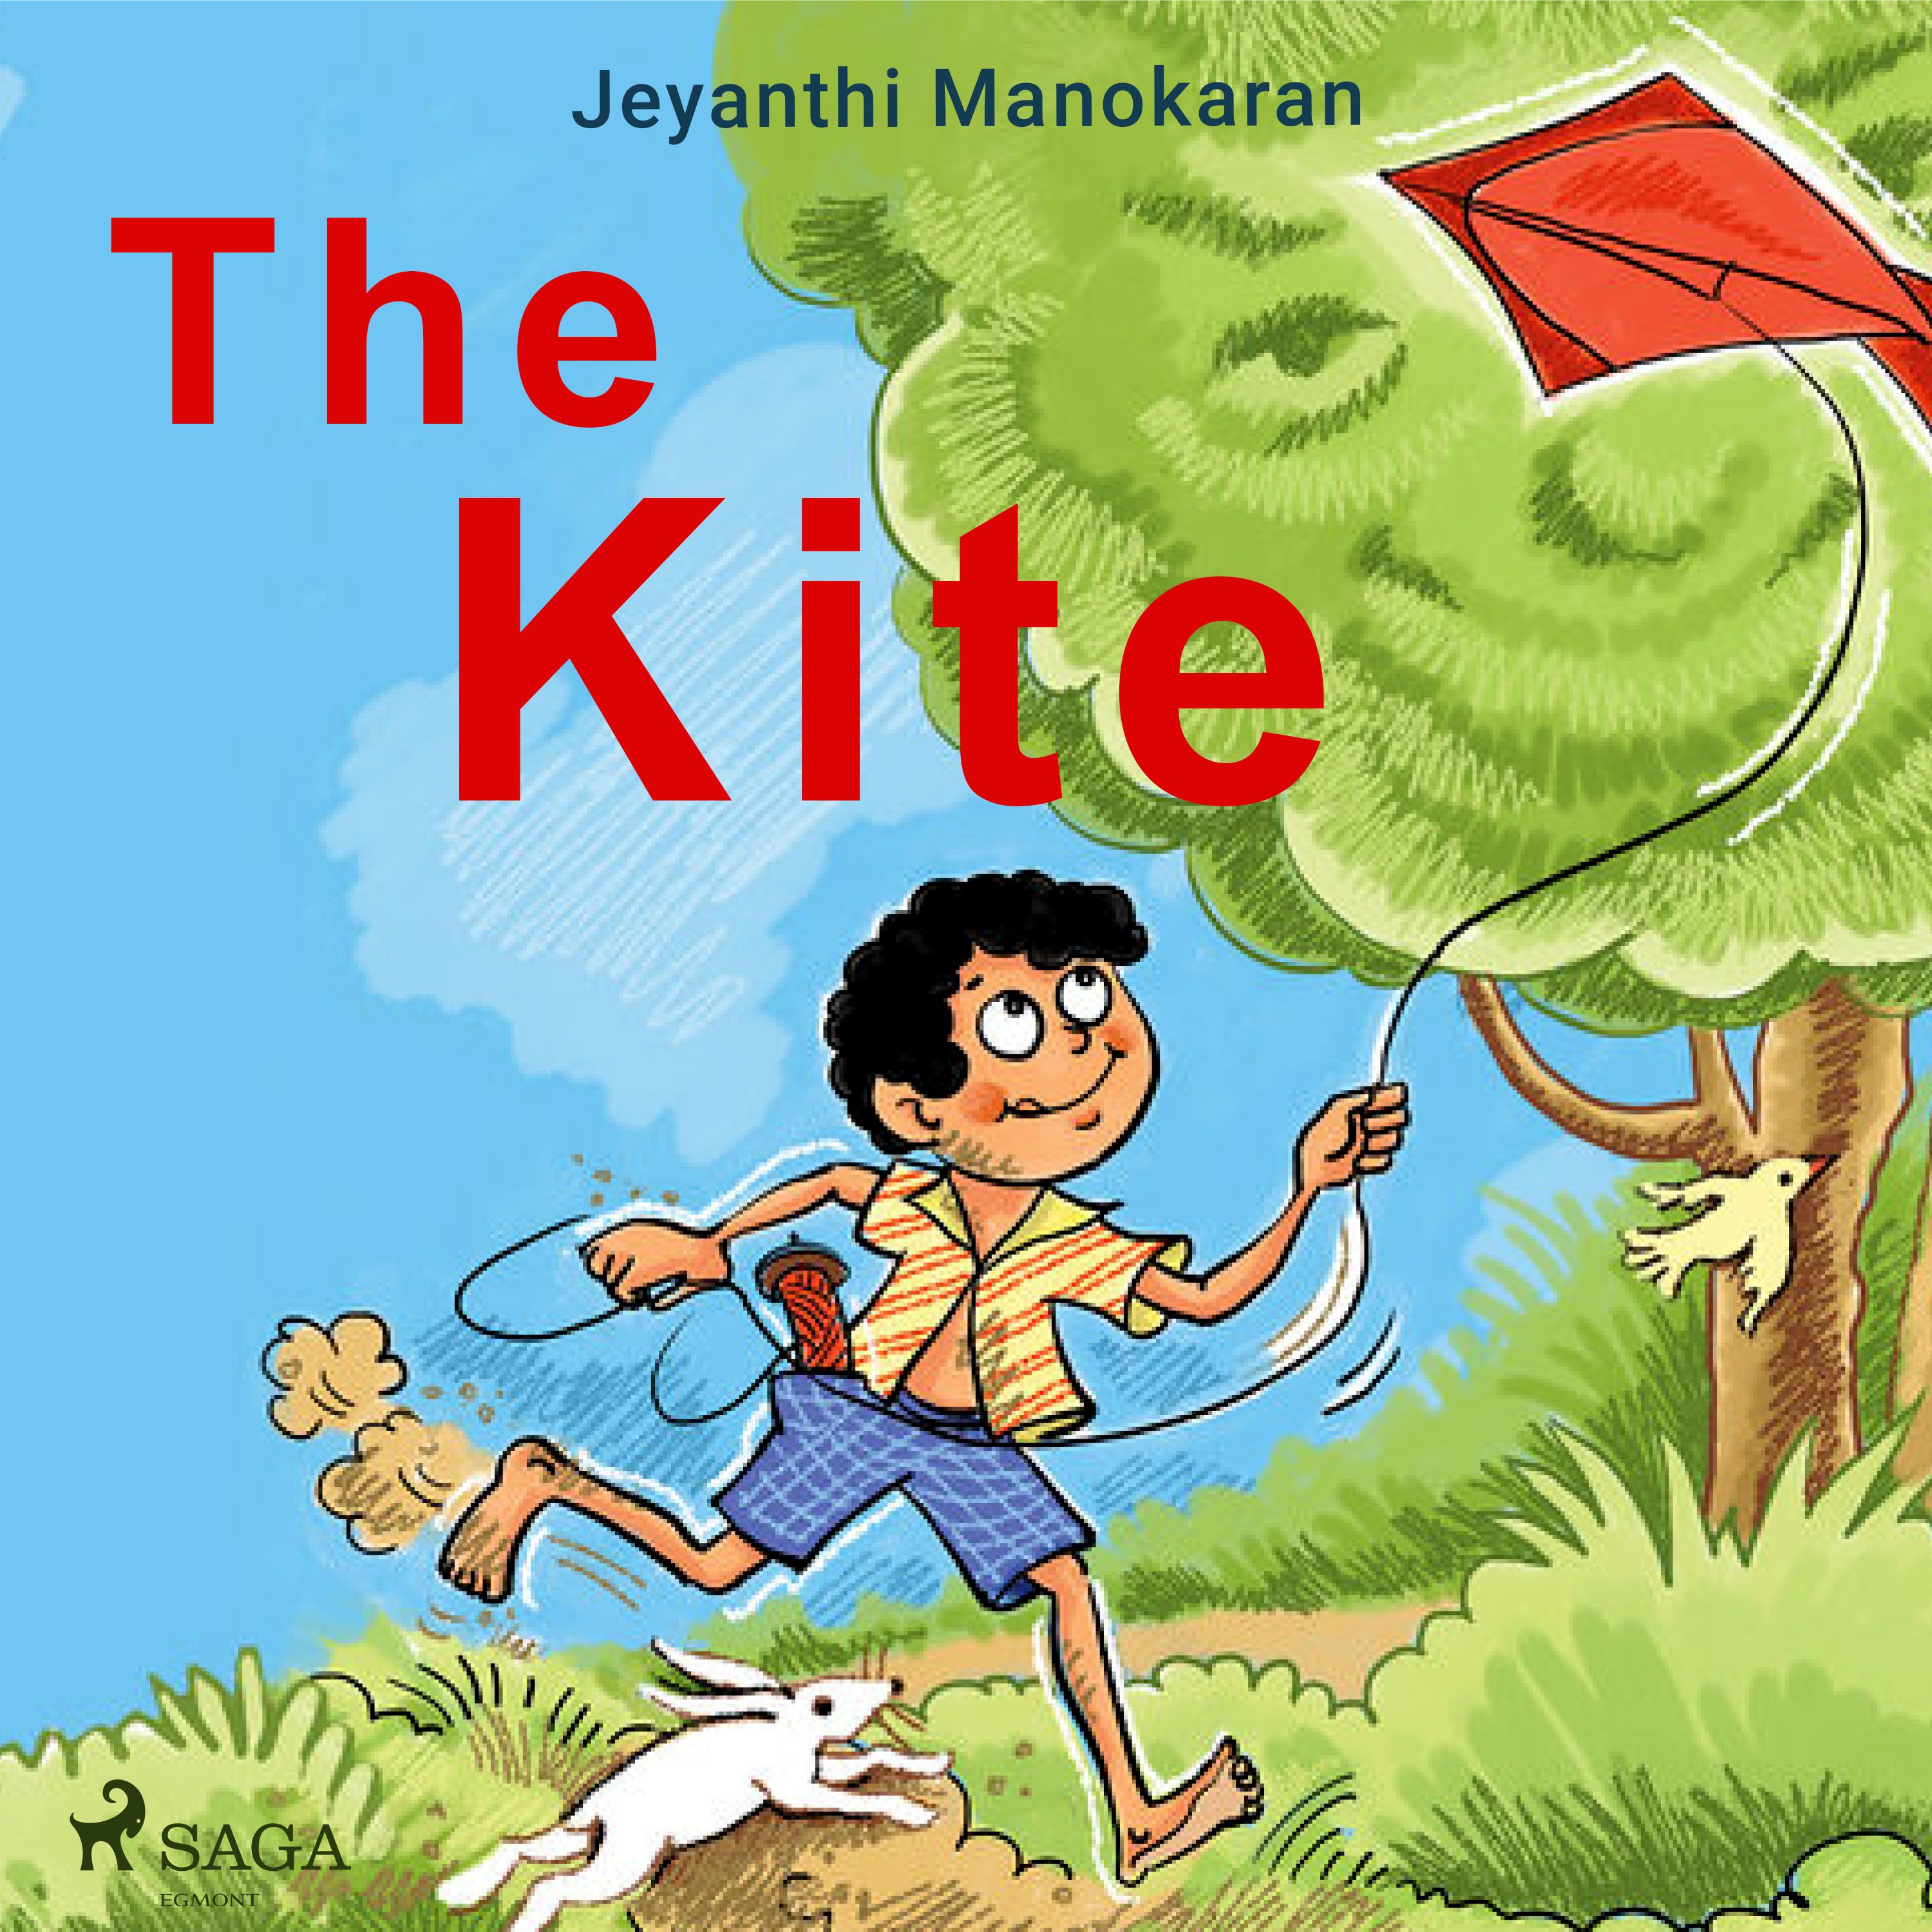 The Kite, audiobook by Jeyanthi Manokaran